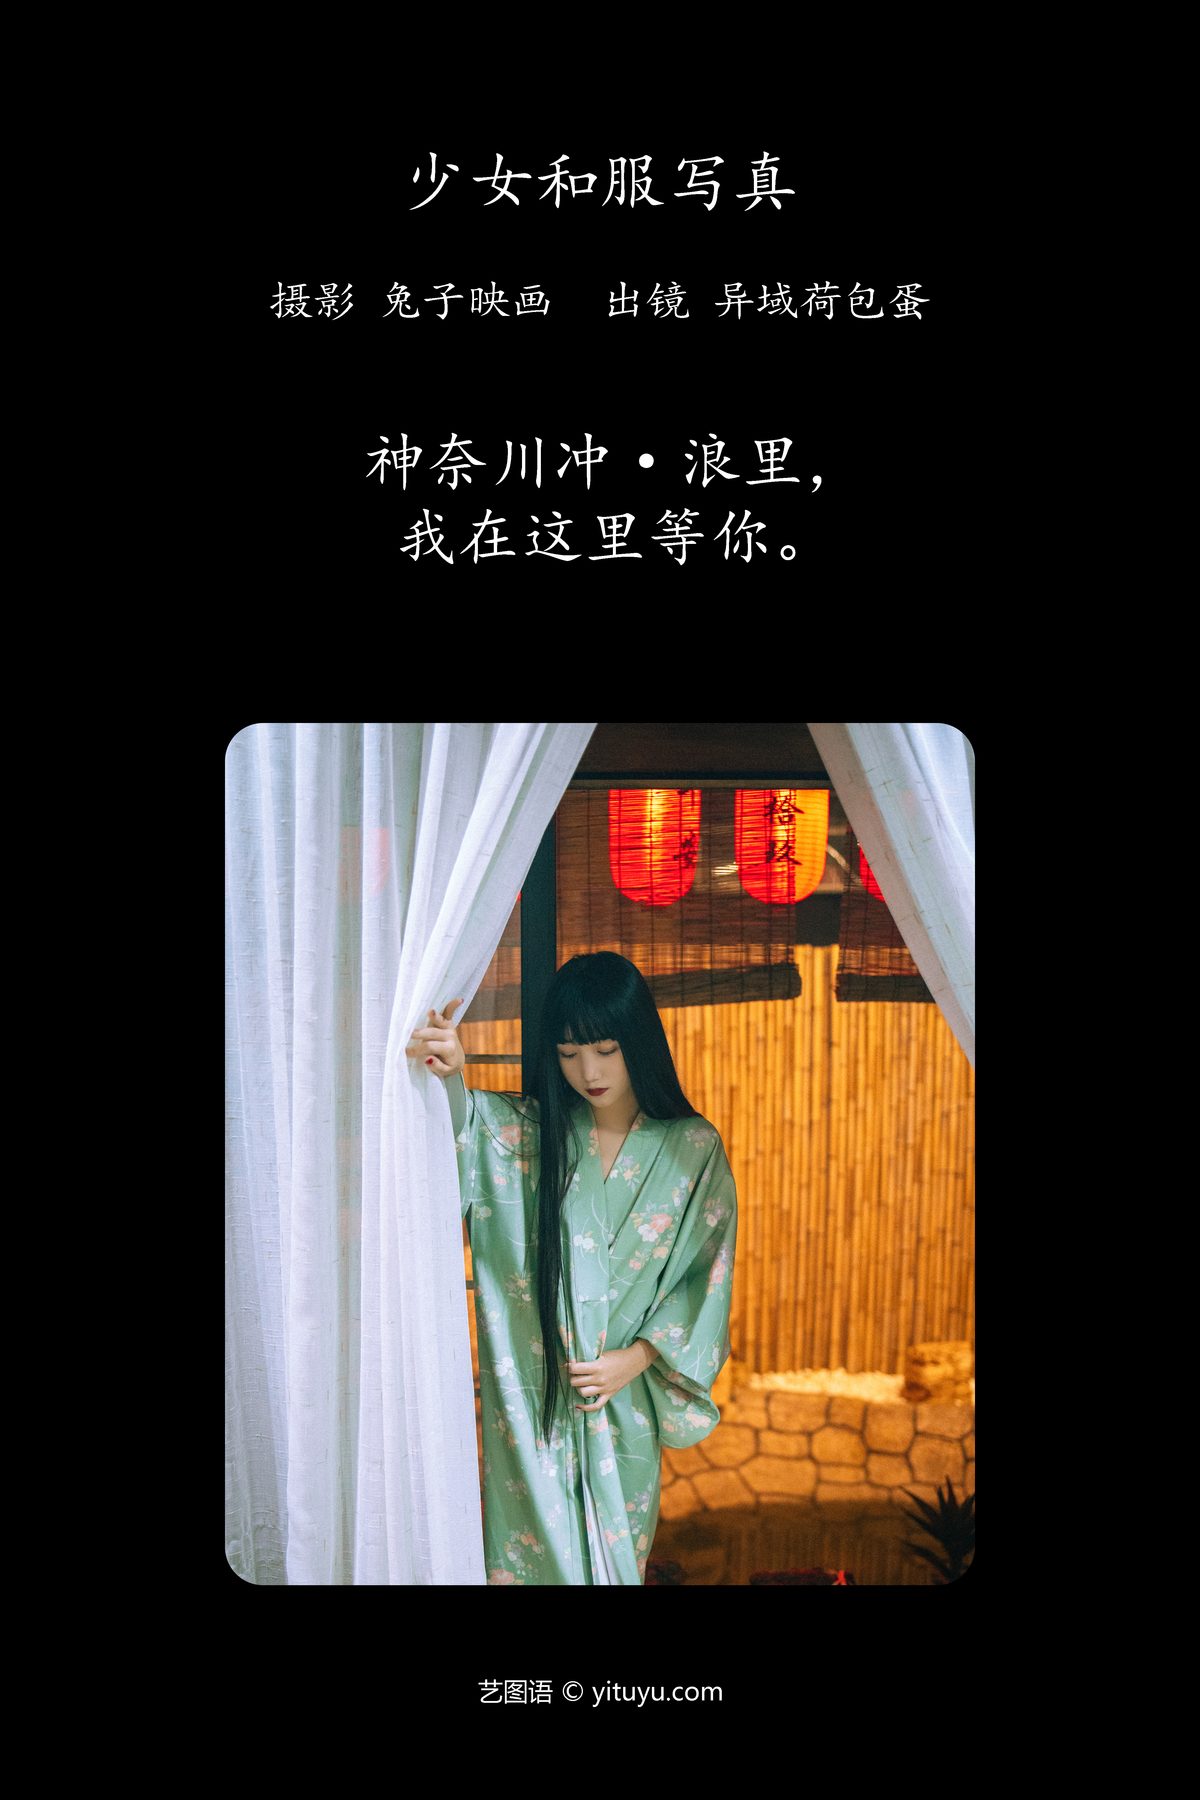 YiTuYu艺图语 Vol 4489 Yi Yu He Bao Dan 0001 4631257180.jpg